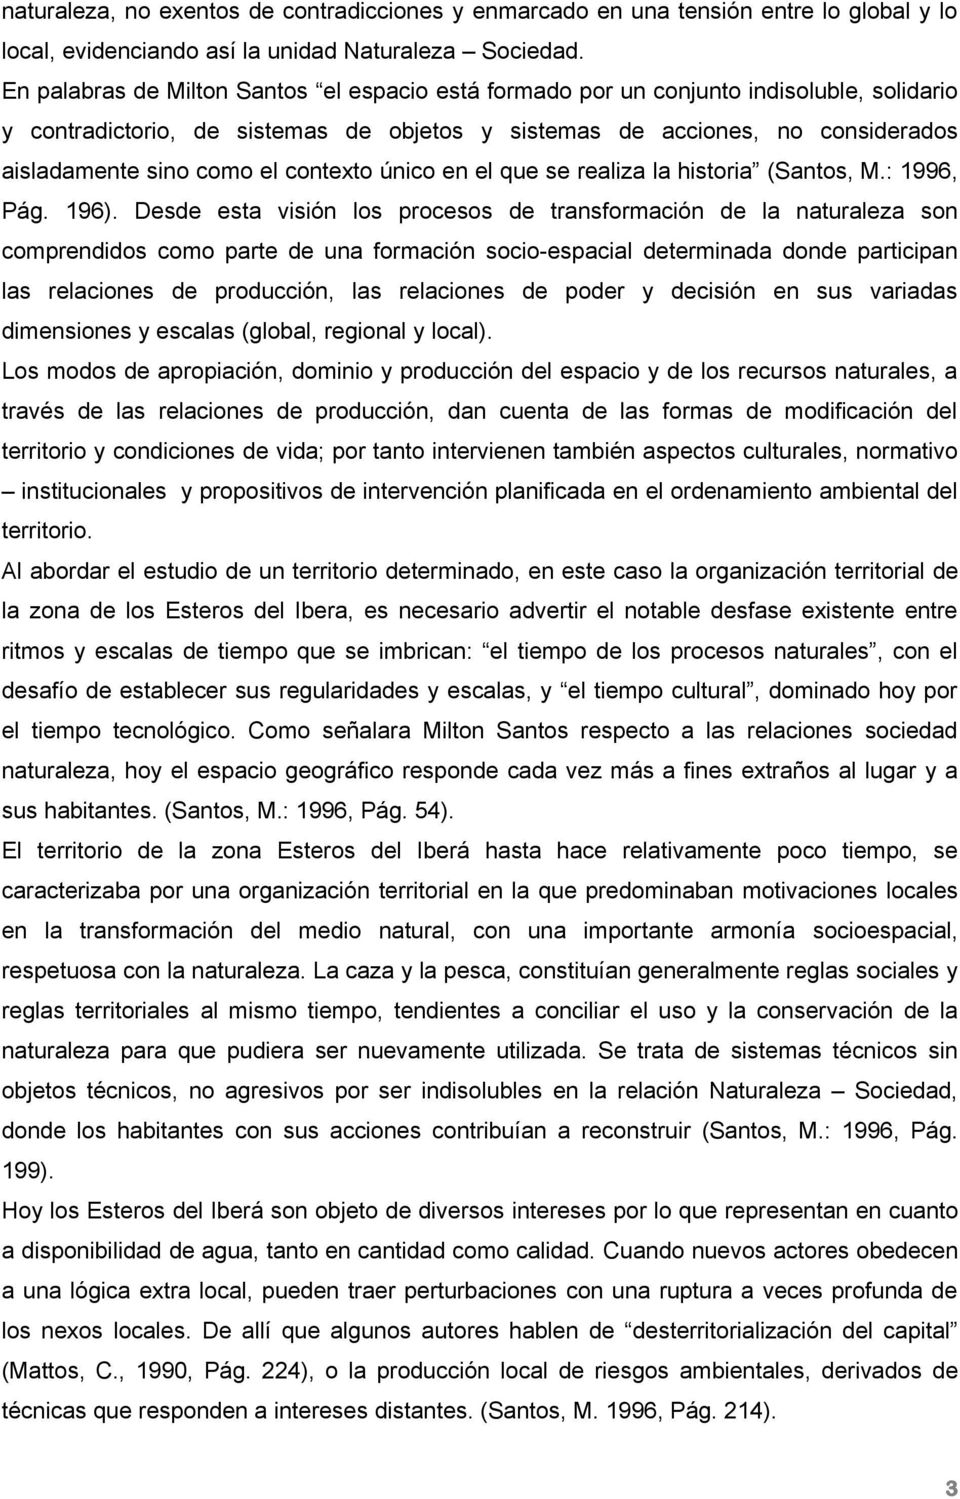 contexto único en el que se realiza la historia (Santos, M.: 1996, Pág. 196).